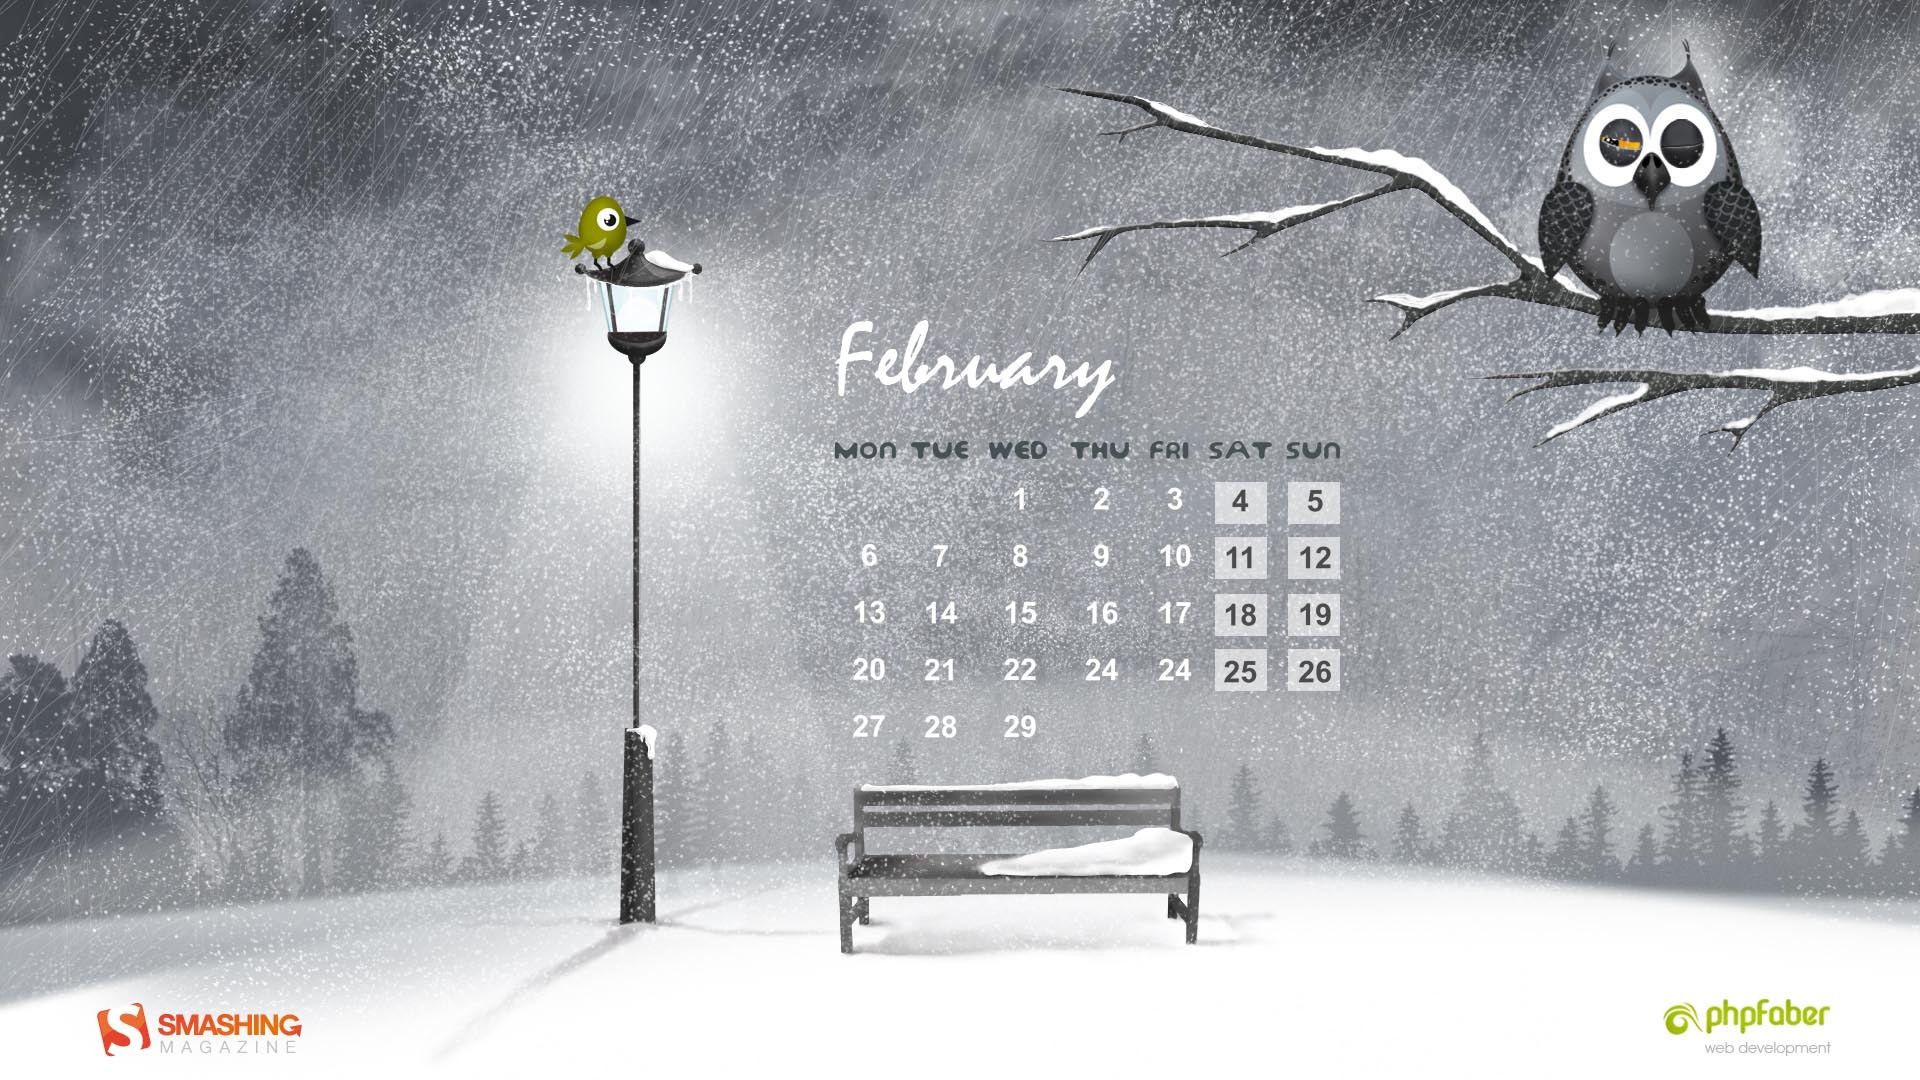 Calendario febrero 2012 fondos de pantalla (2) #5 - 1920x1080